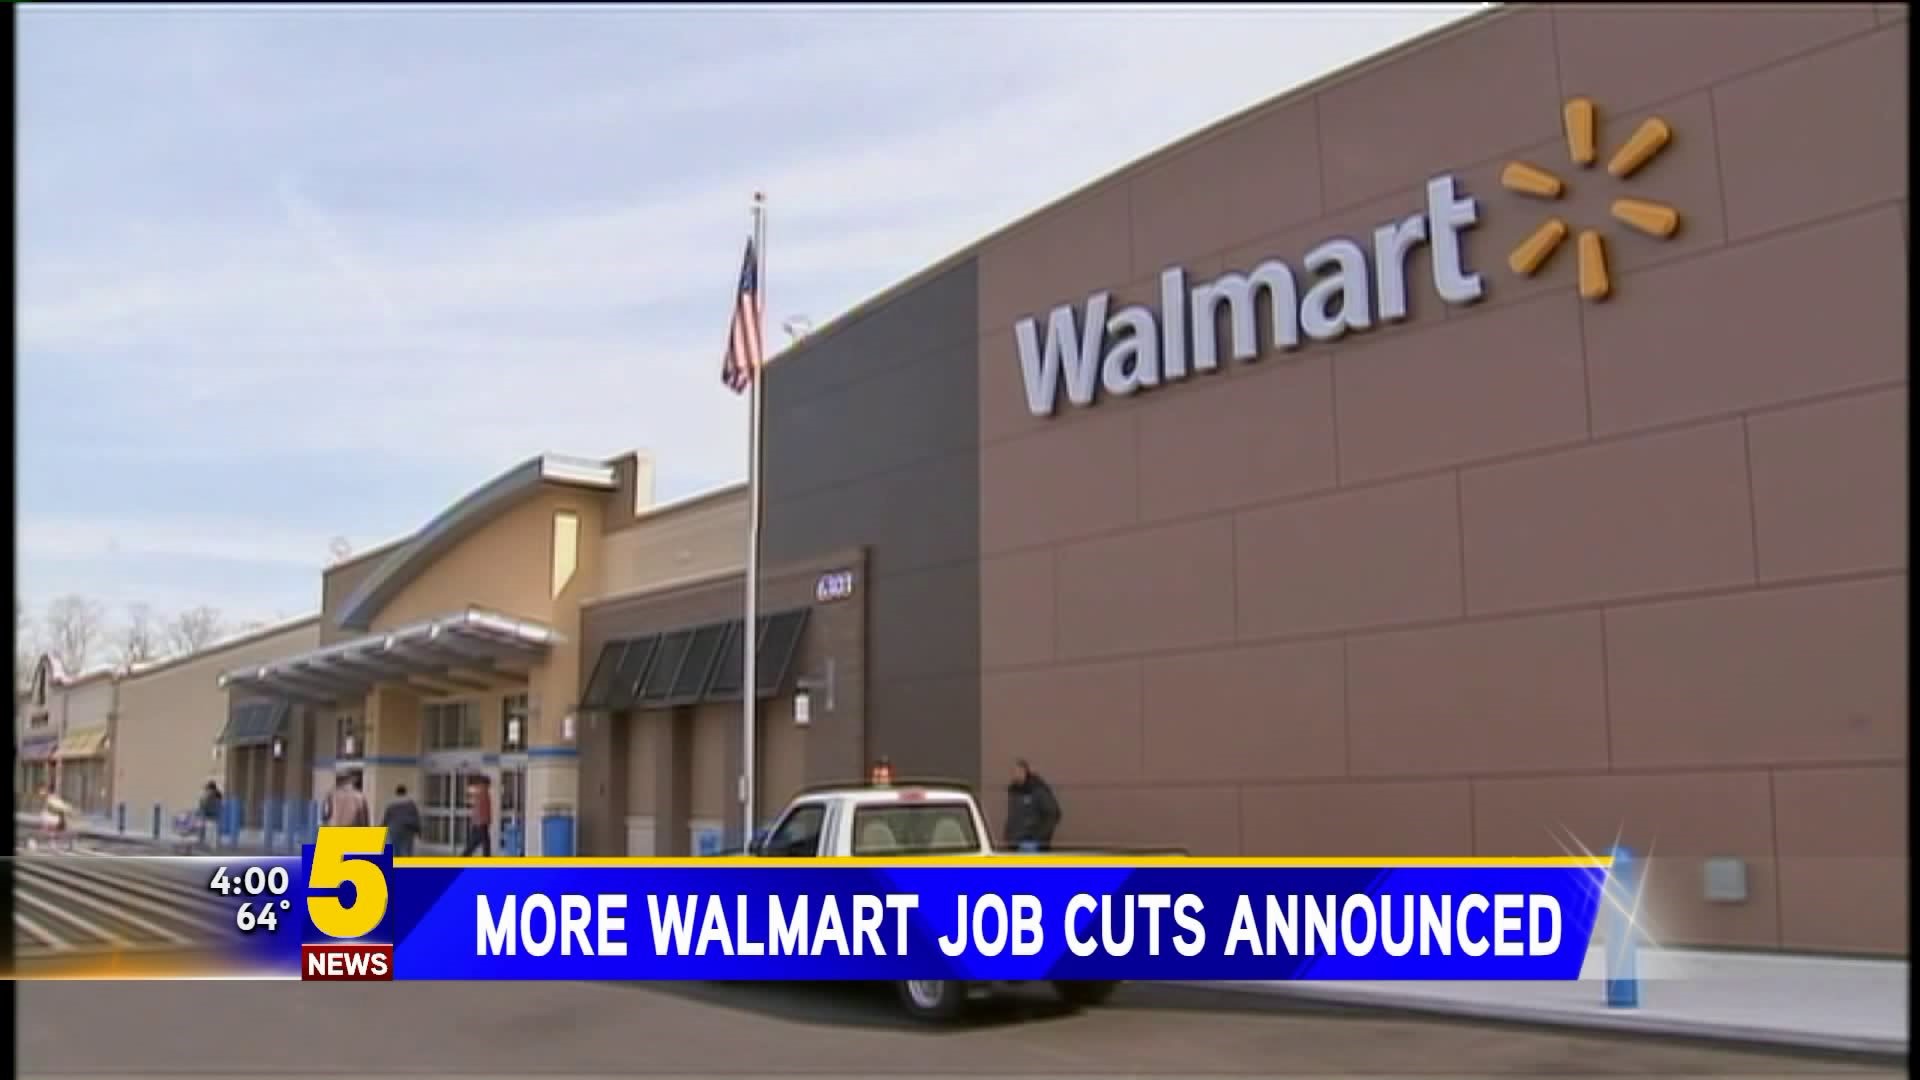 More Walmart Job Cuts Announced